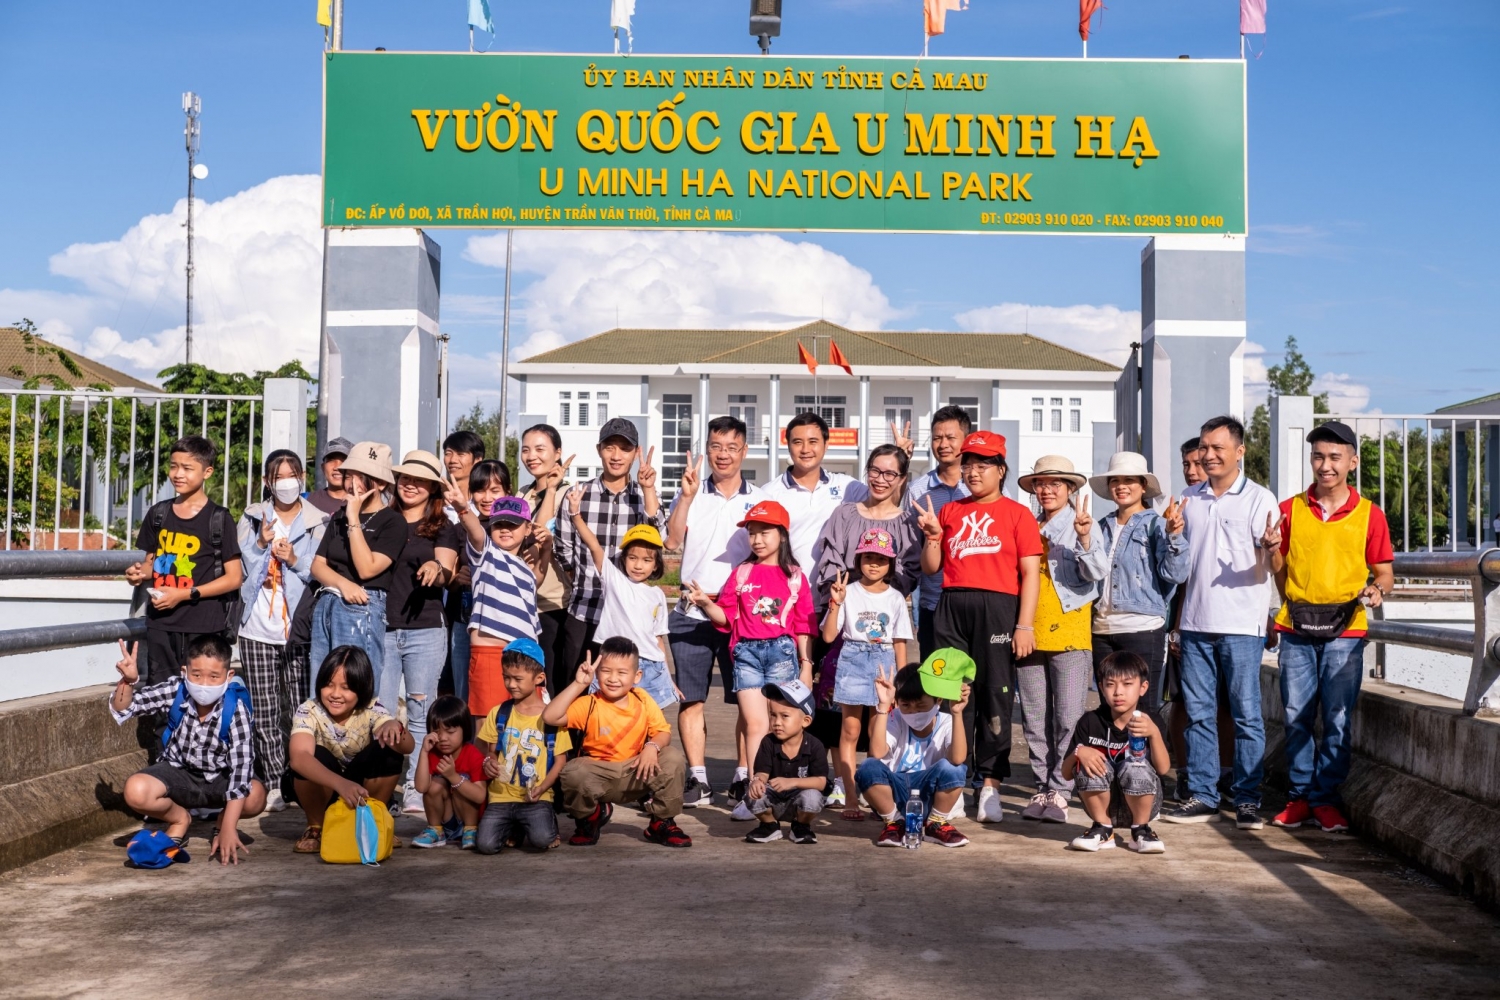 ác gia đình KCM hào hứng tham gia hoạt động dã ngoại xuyên đường rừng tại Vườn Quốc gia U Minh Hạ